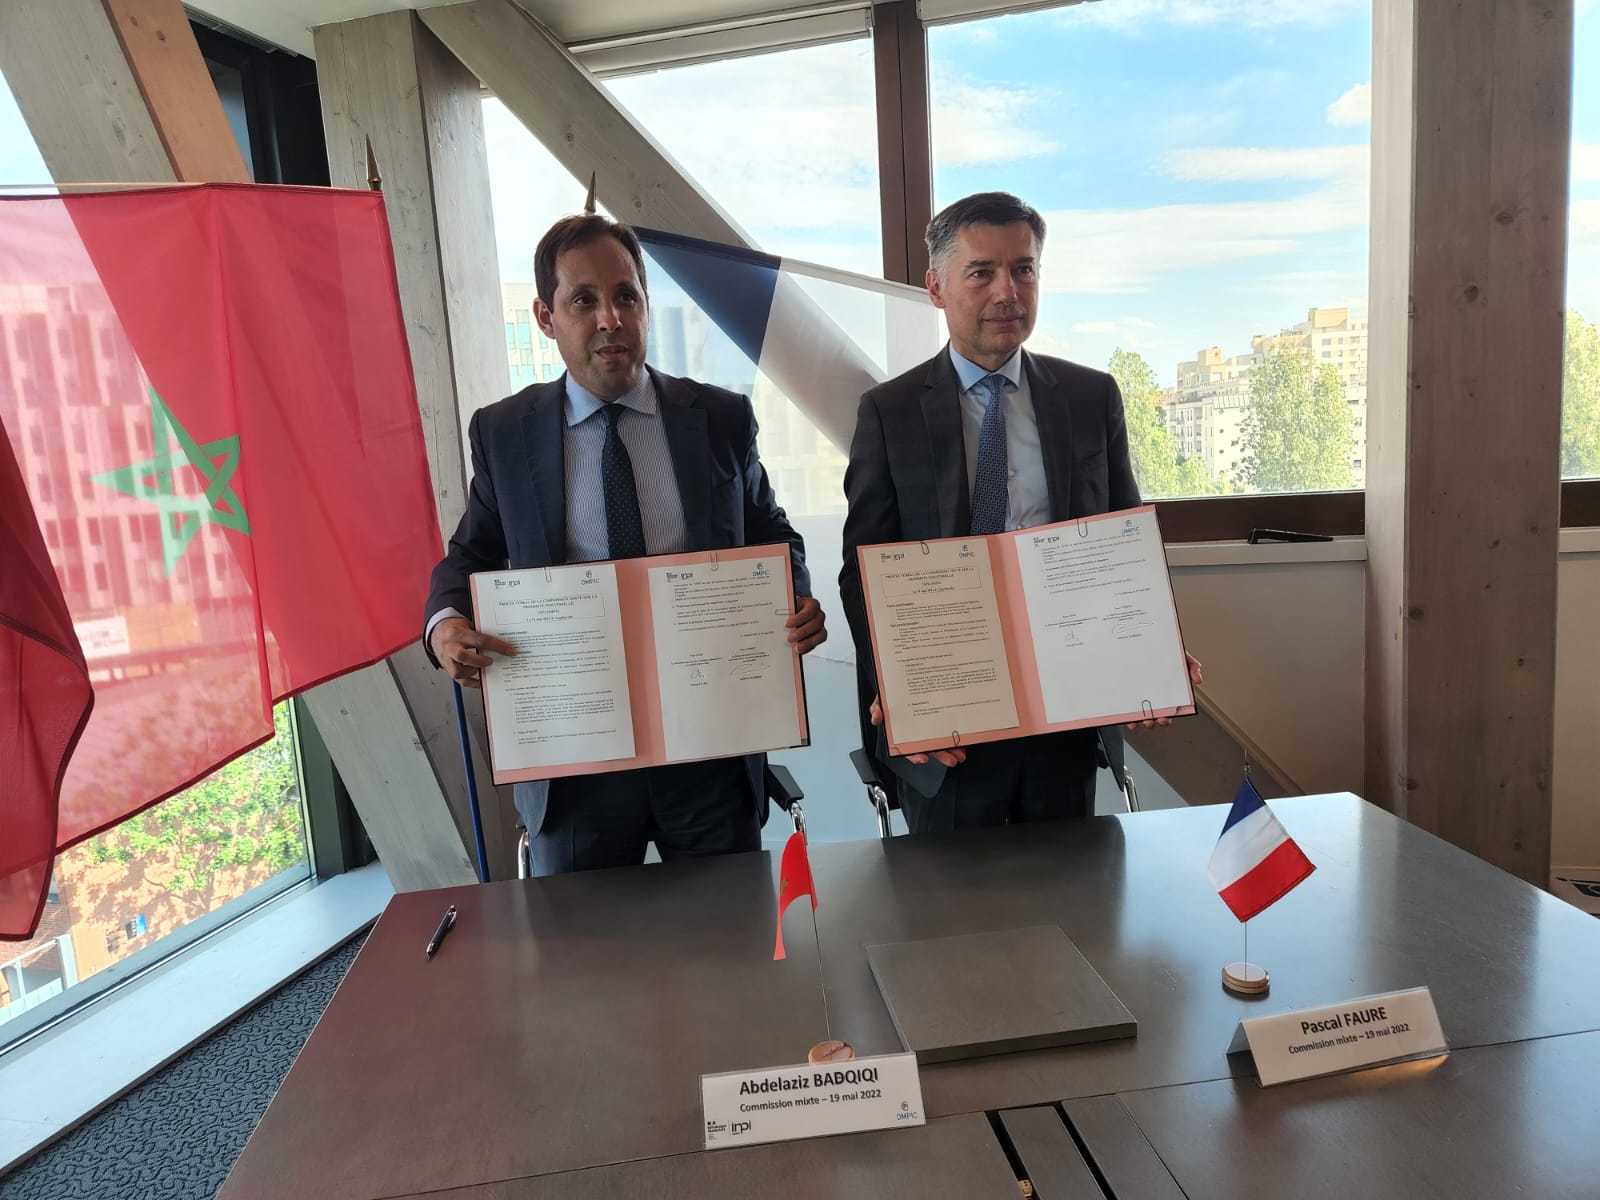 التعاون المغربي الفرنسي في مجال الملكية الصناعية والتجارية